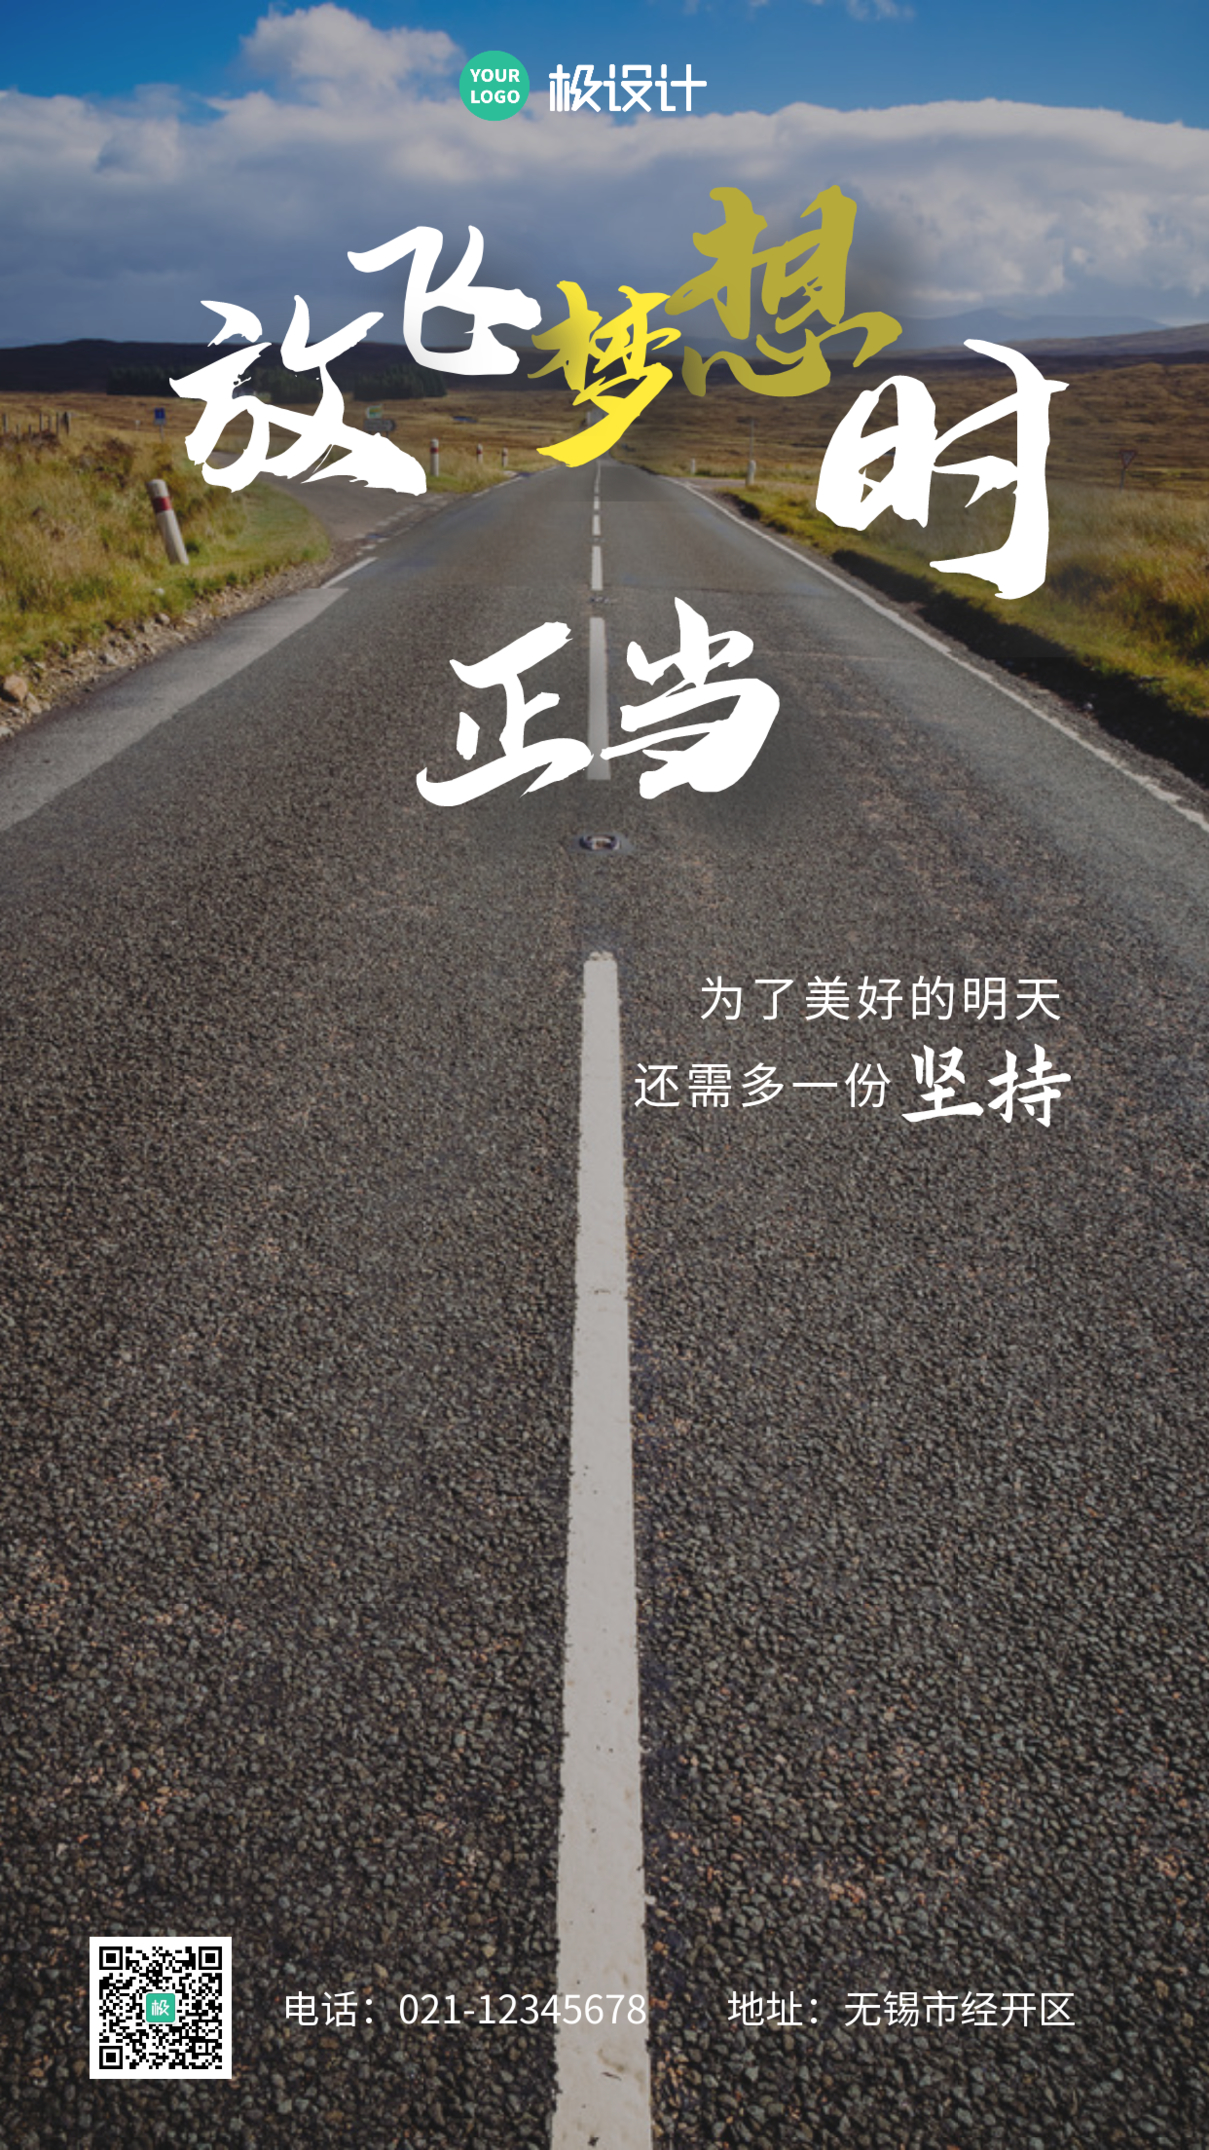 山川公路梦想励志白色摄影营销手机海报